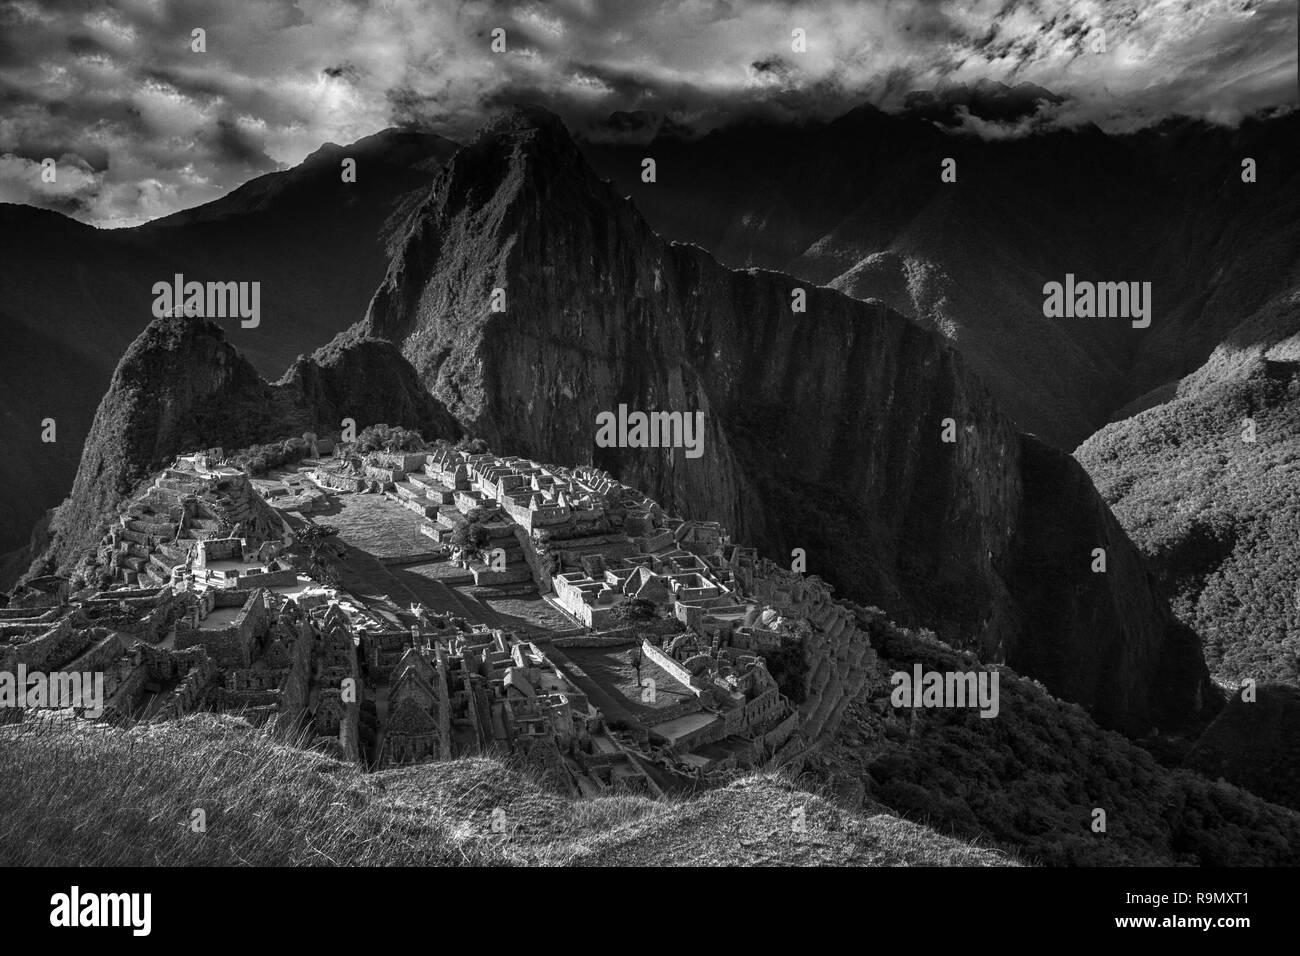 Sicht auf die verlorene Stadt der Inkas Machu Picchu in der Nähe von Cusco, Peru. Machu Picchu ist eine peruanische historische Heiligtum und ein UNESCO-Weltkulturerbe. Machu Stockfoto